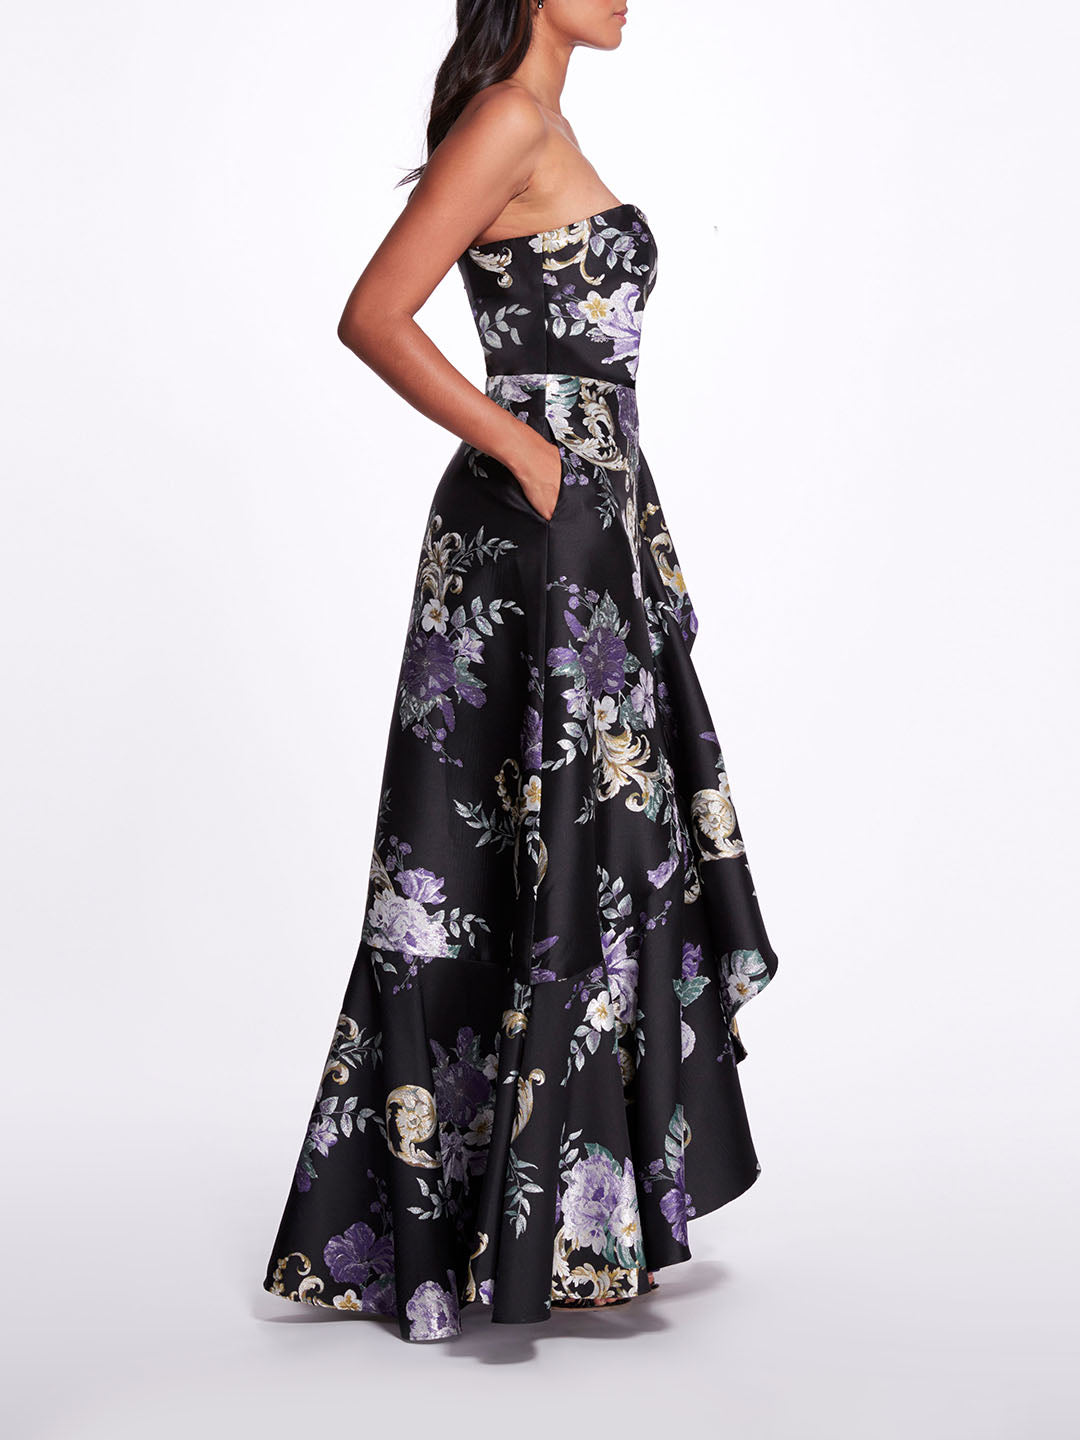 Bandeau Dress - Black/floral - Ladies